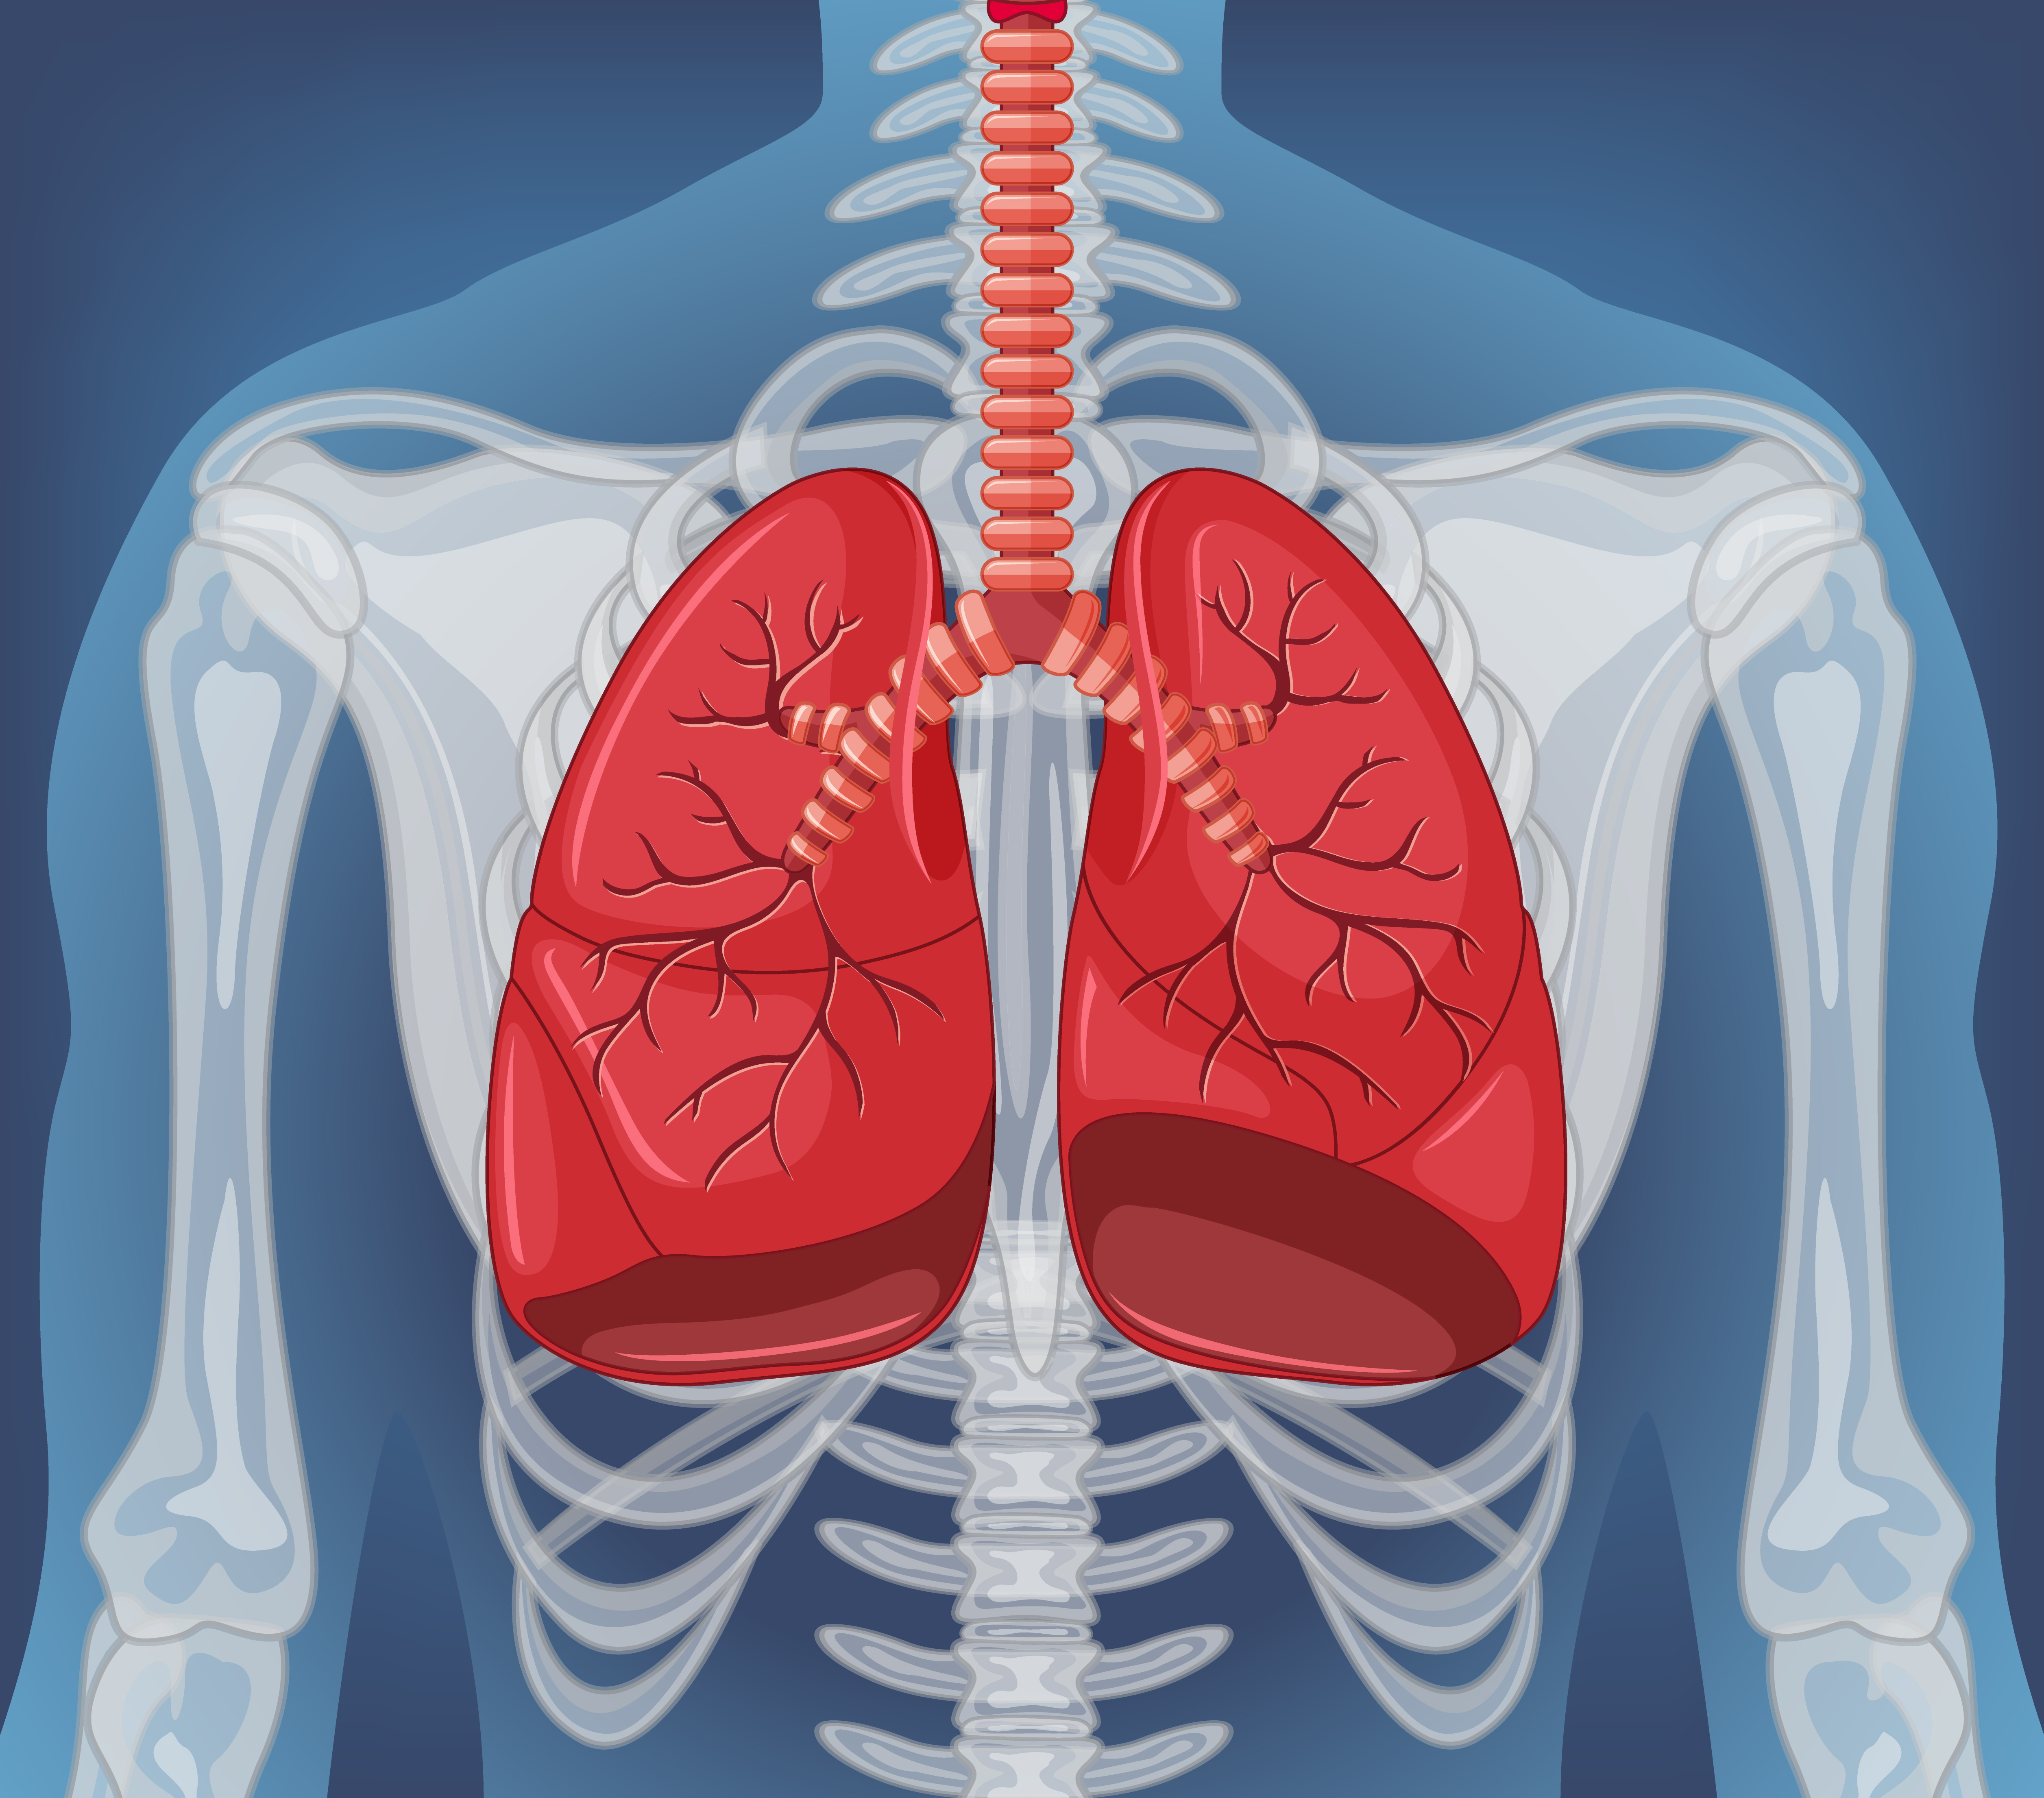 인체를 투영하여&#44; 기관지와 폐를 빨갛게&#44; 그리고 상체의 뼈를 하얗게 이미지화한 그림 (human-internal-organ-with-lungs)